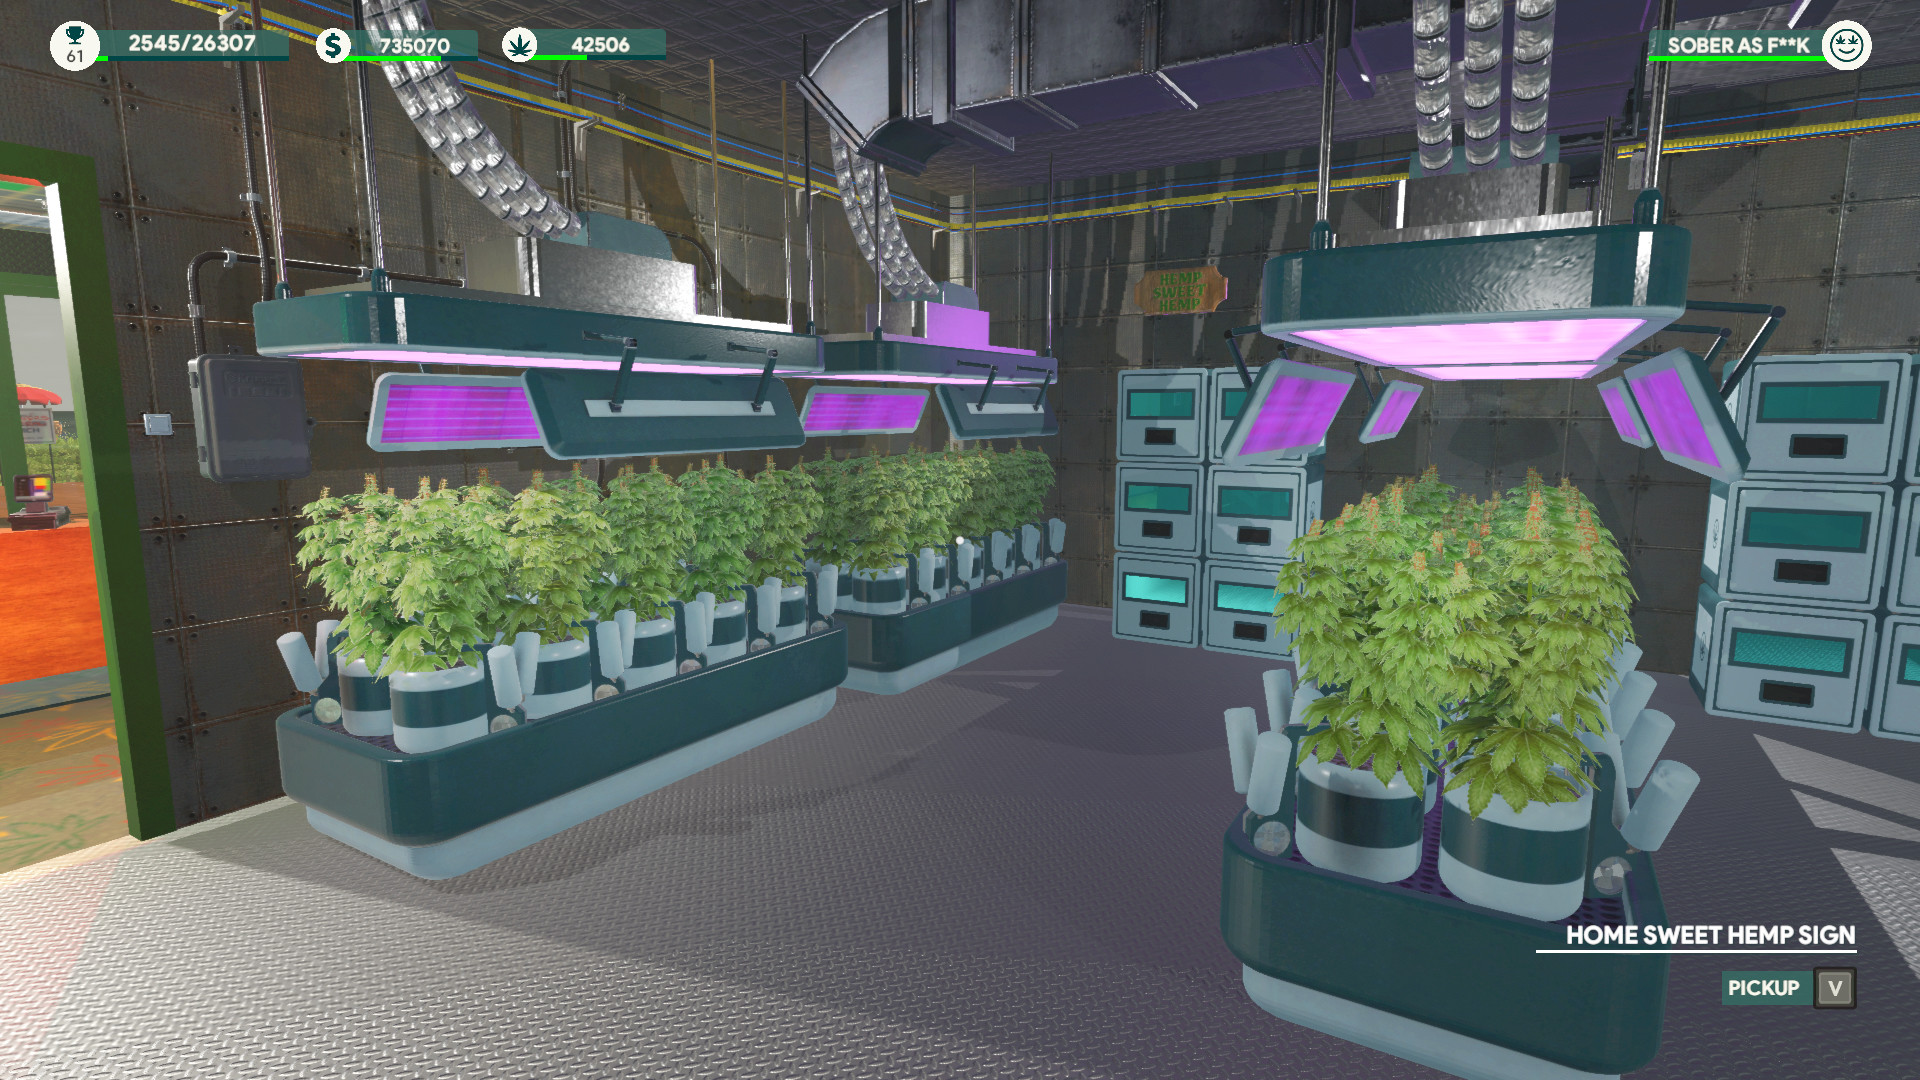 Weed Shop 3 screenshot